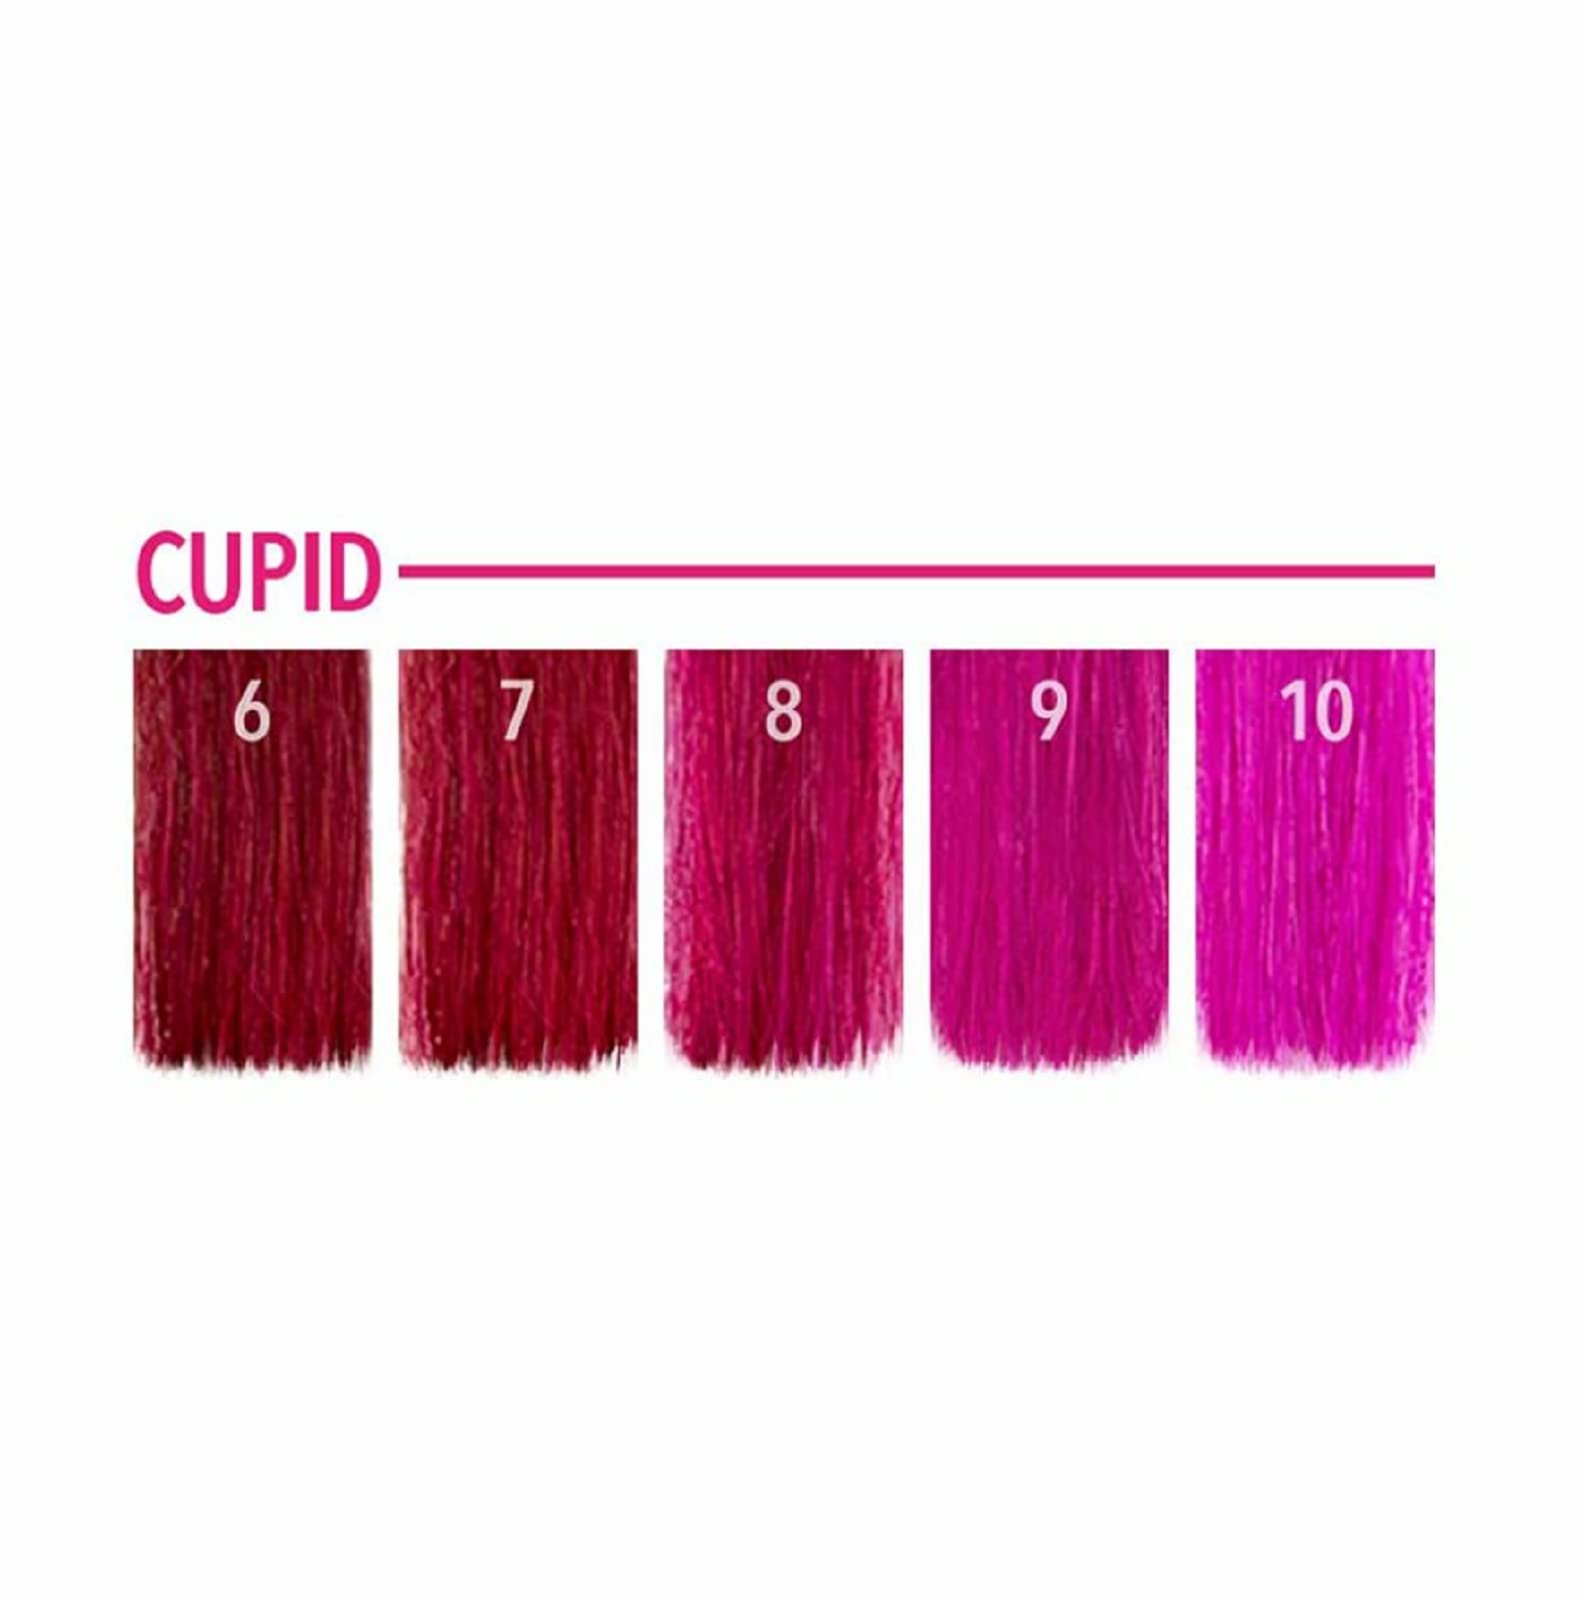 Pulp Riot Semi-Permanent Hair Color 4oz- Cupid